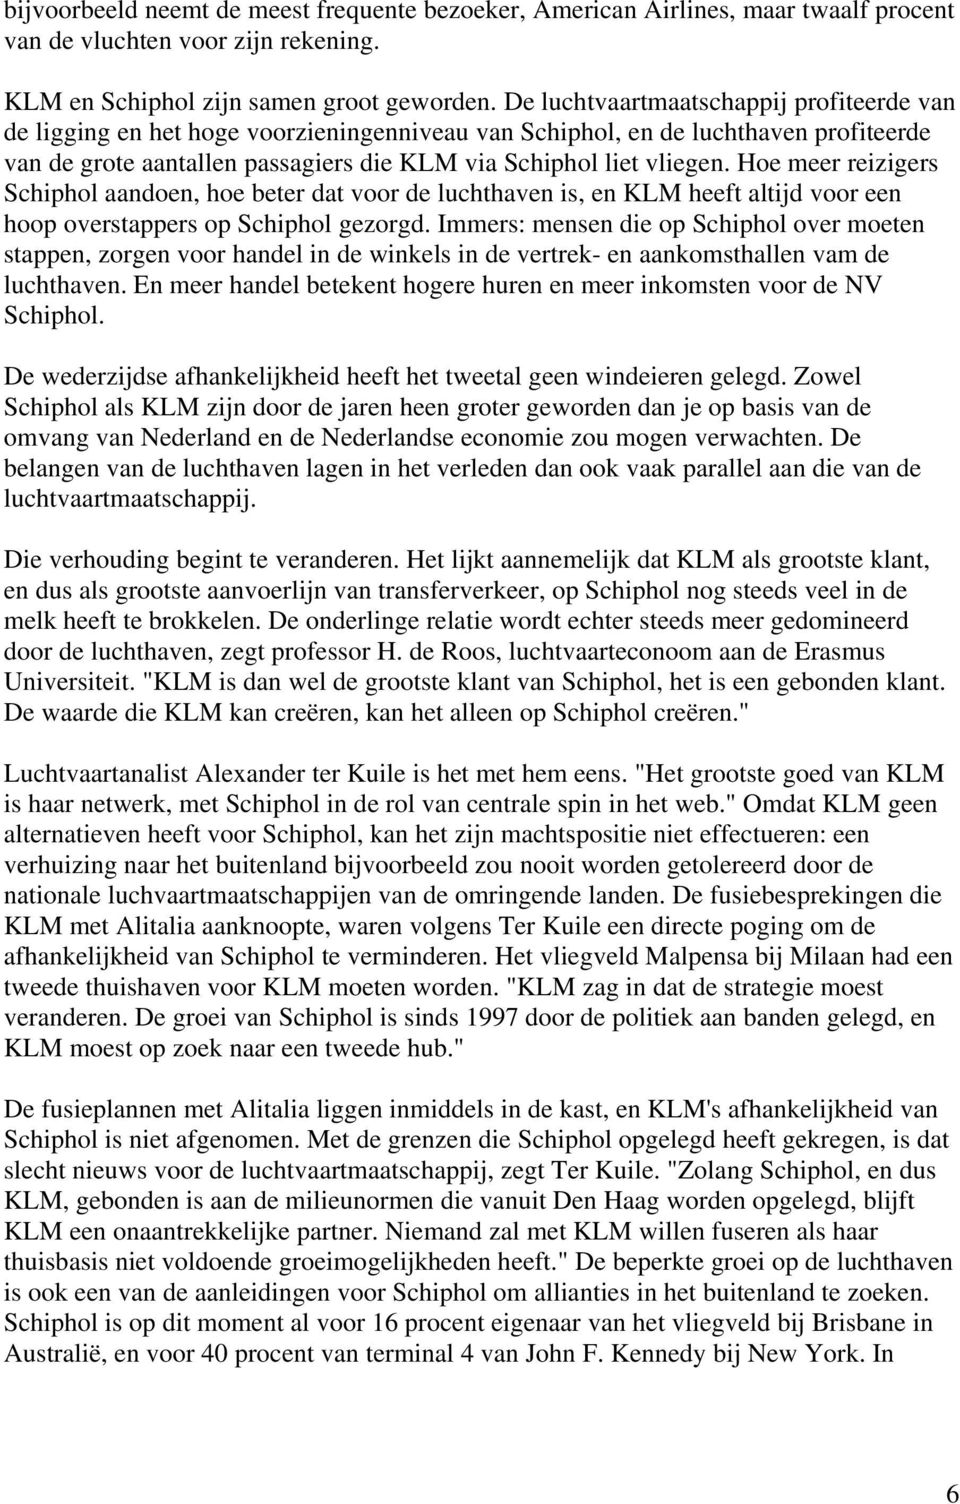 Hoe meer reizigers Schiphol aandoen, hoe beter dat voor de luchthaven is, en KLM heeft altijd voor een hoop overstappers op Schiphol gezorgd.